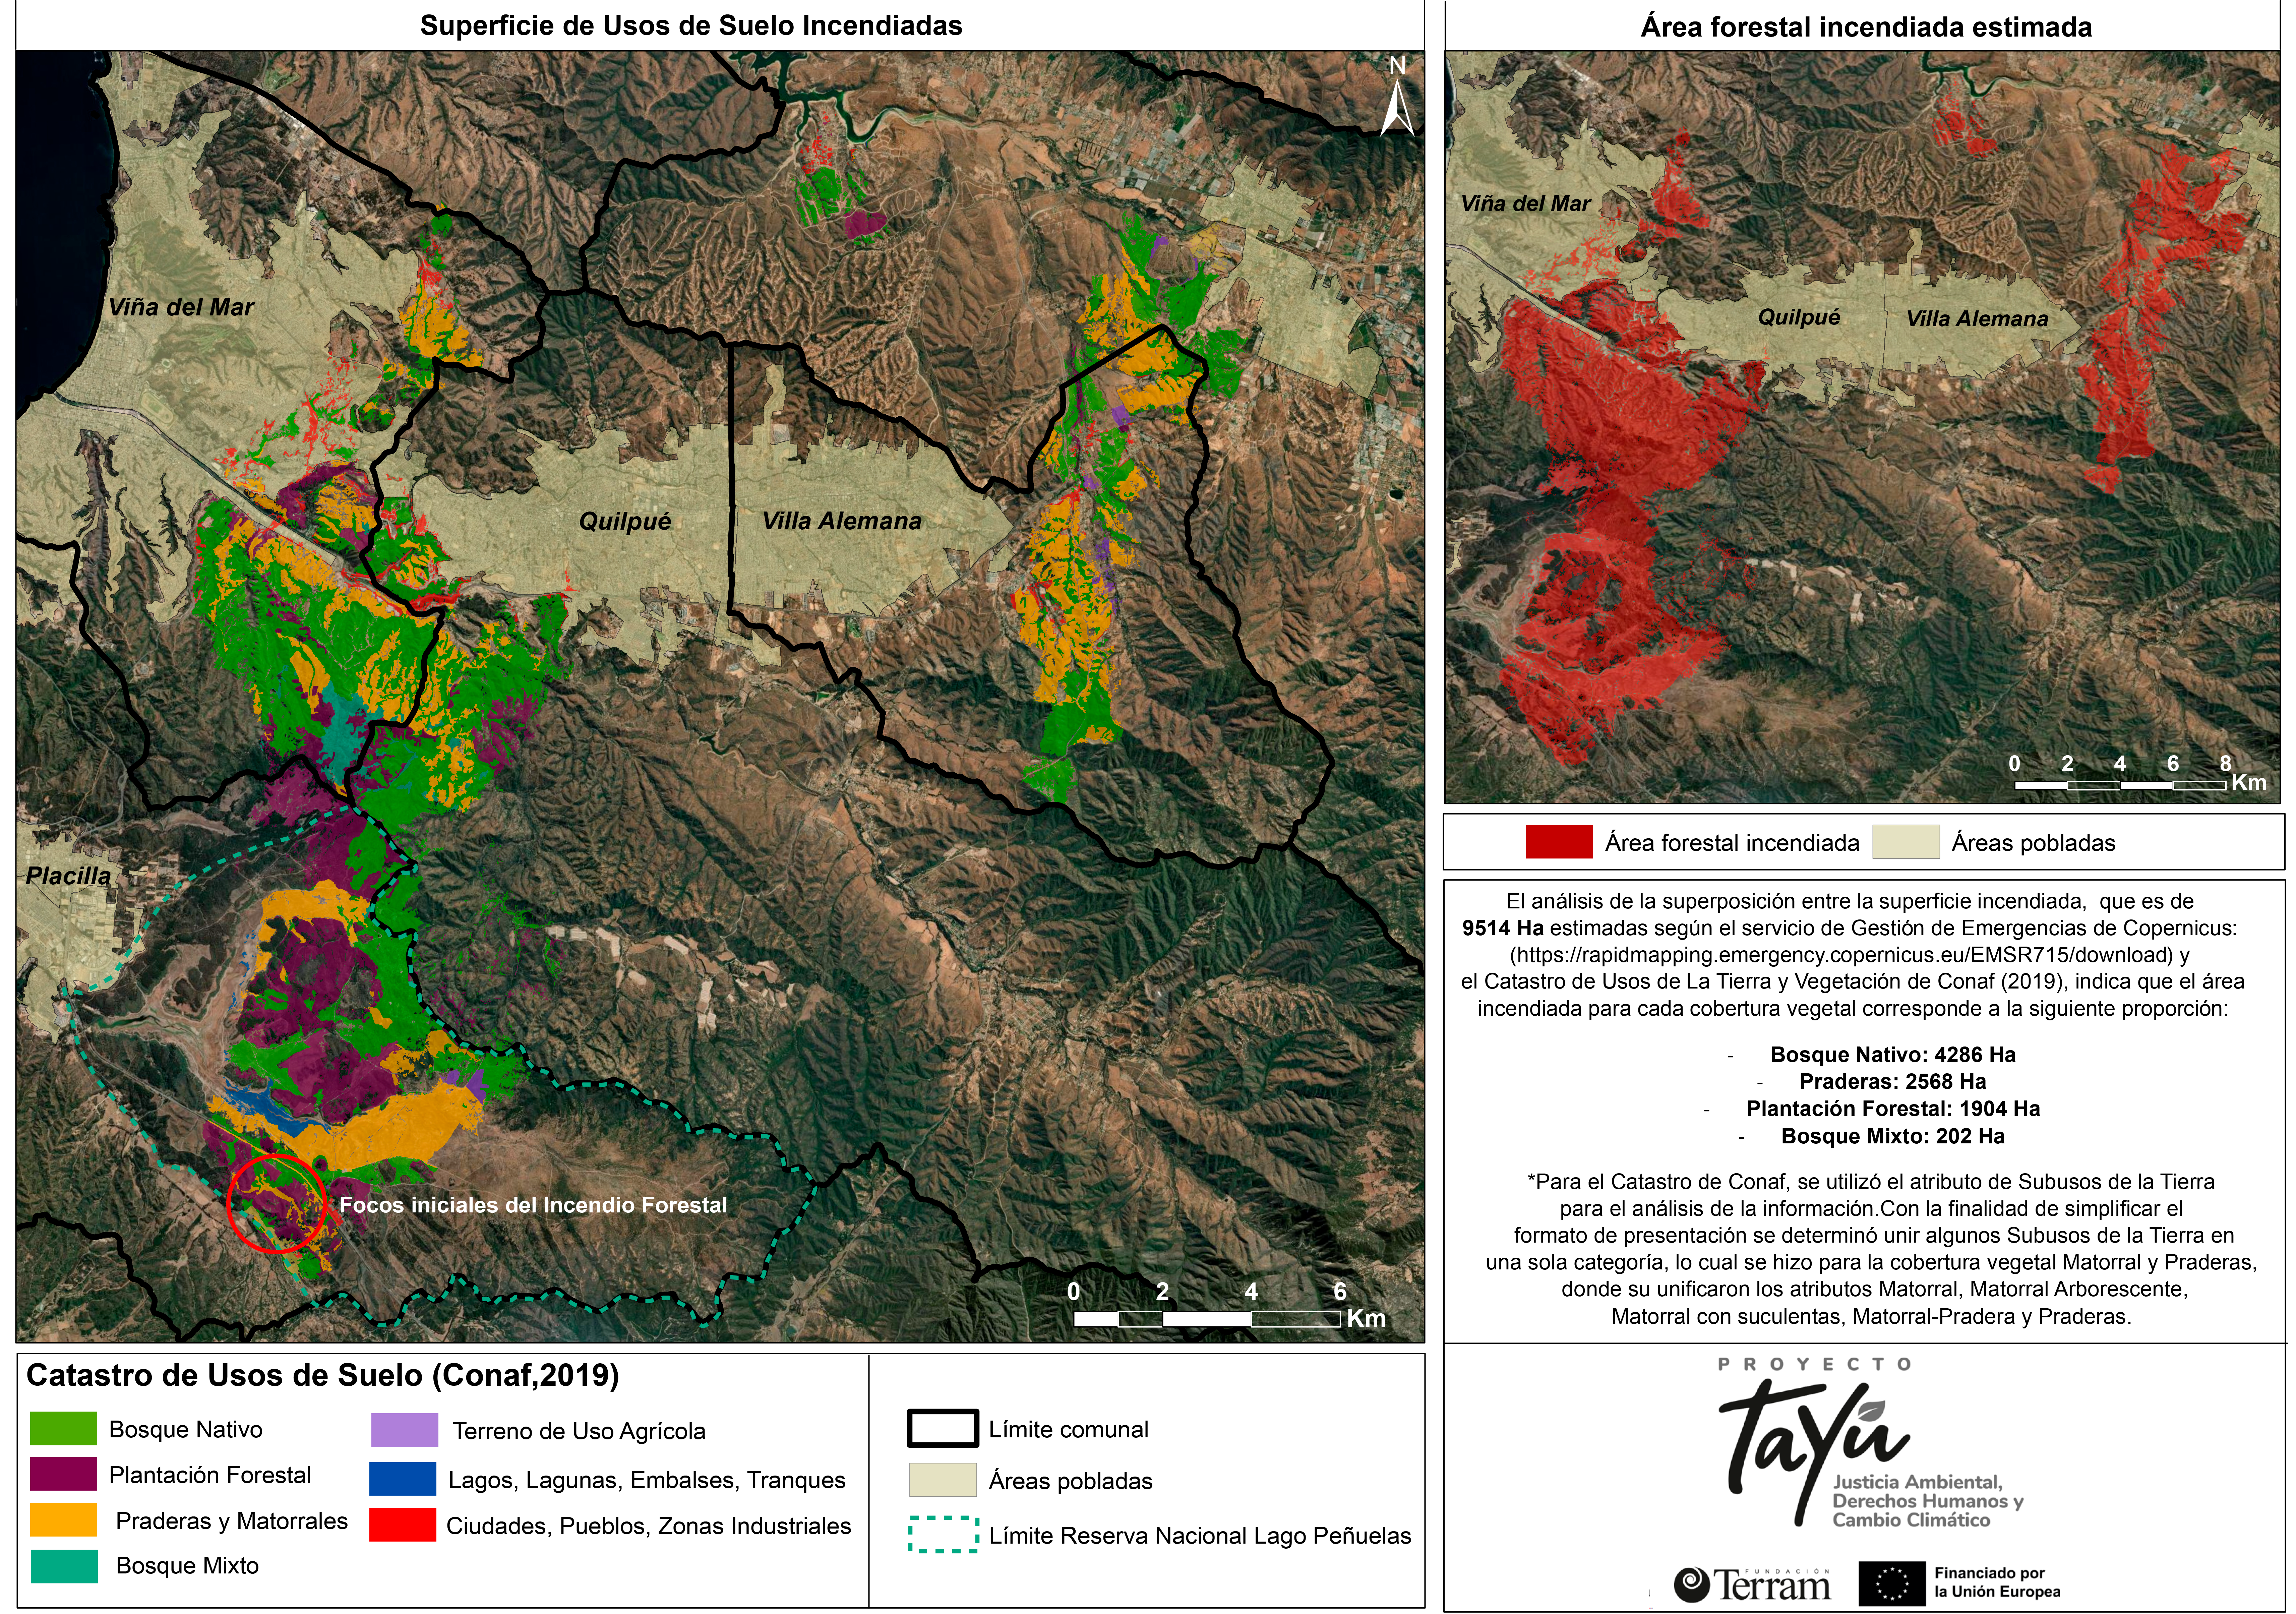 4.286 hectáreas de bosque nativo fueron devastadas por los incendios forestales en el Gran Valparaíso